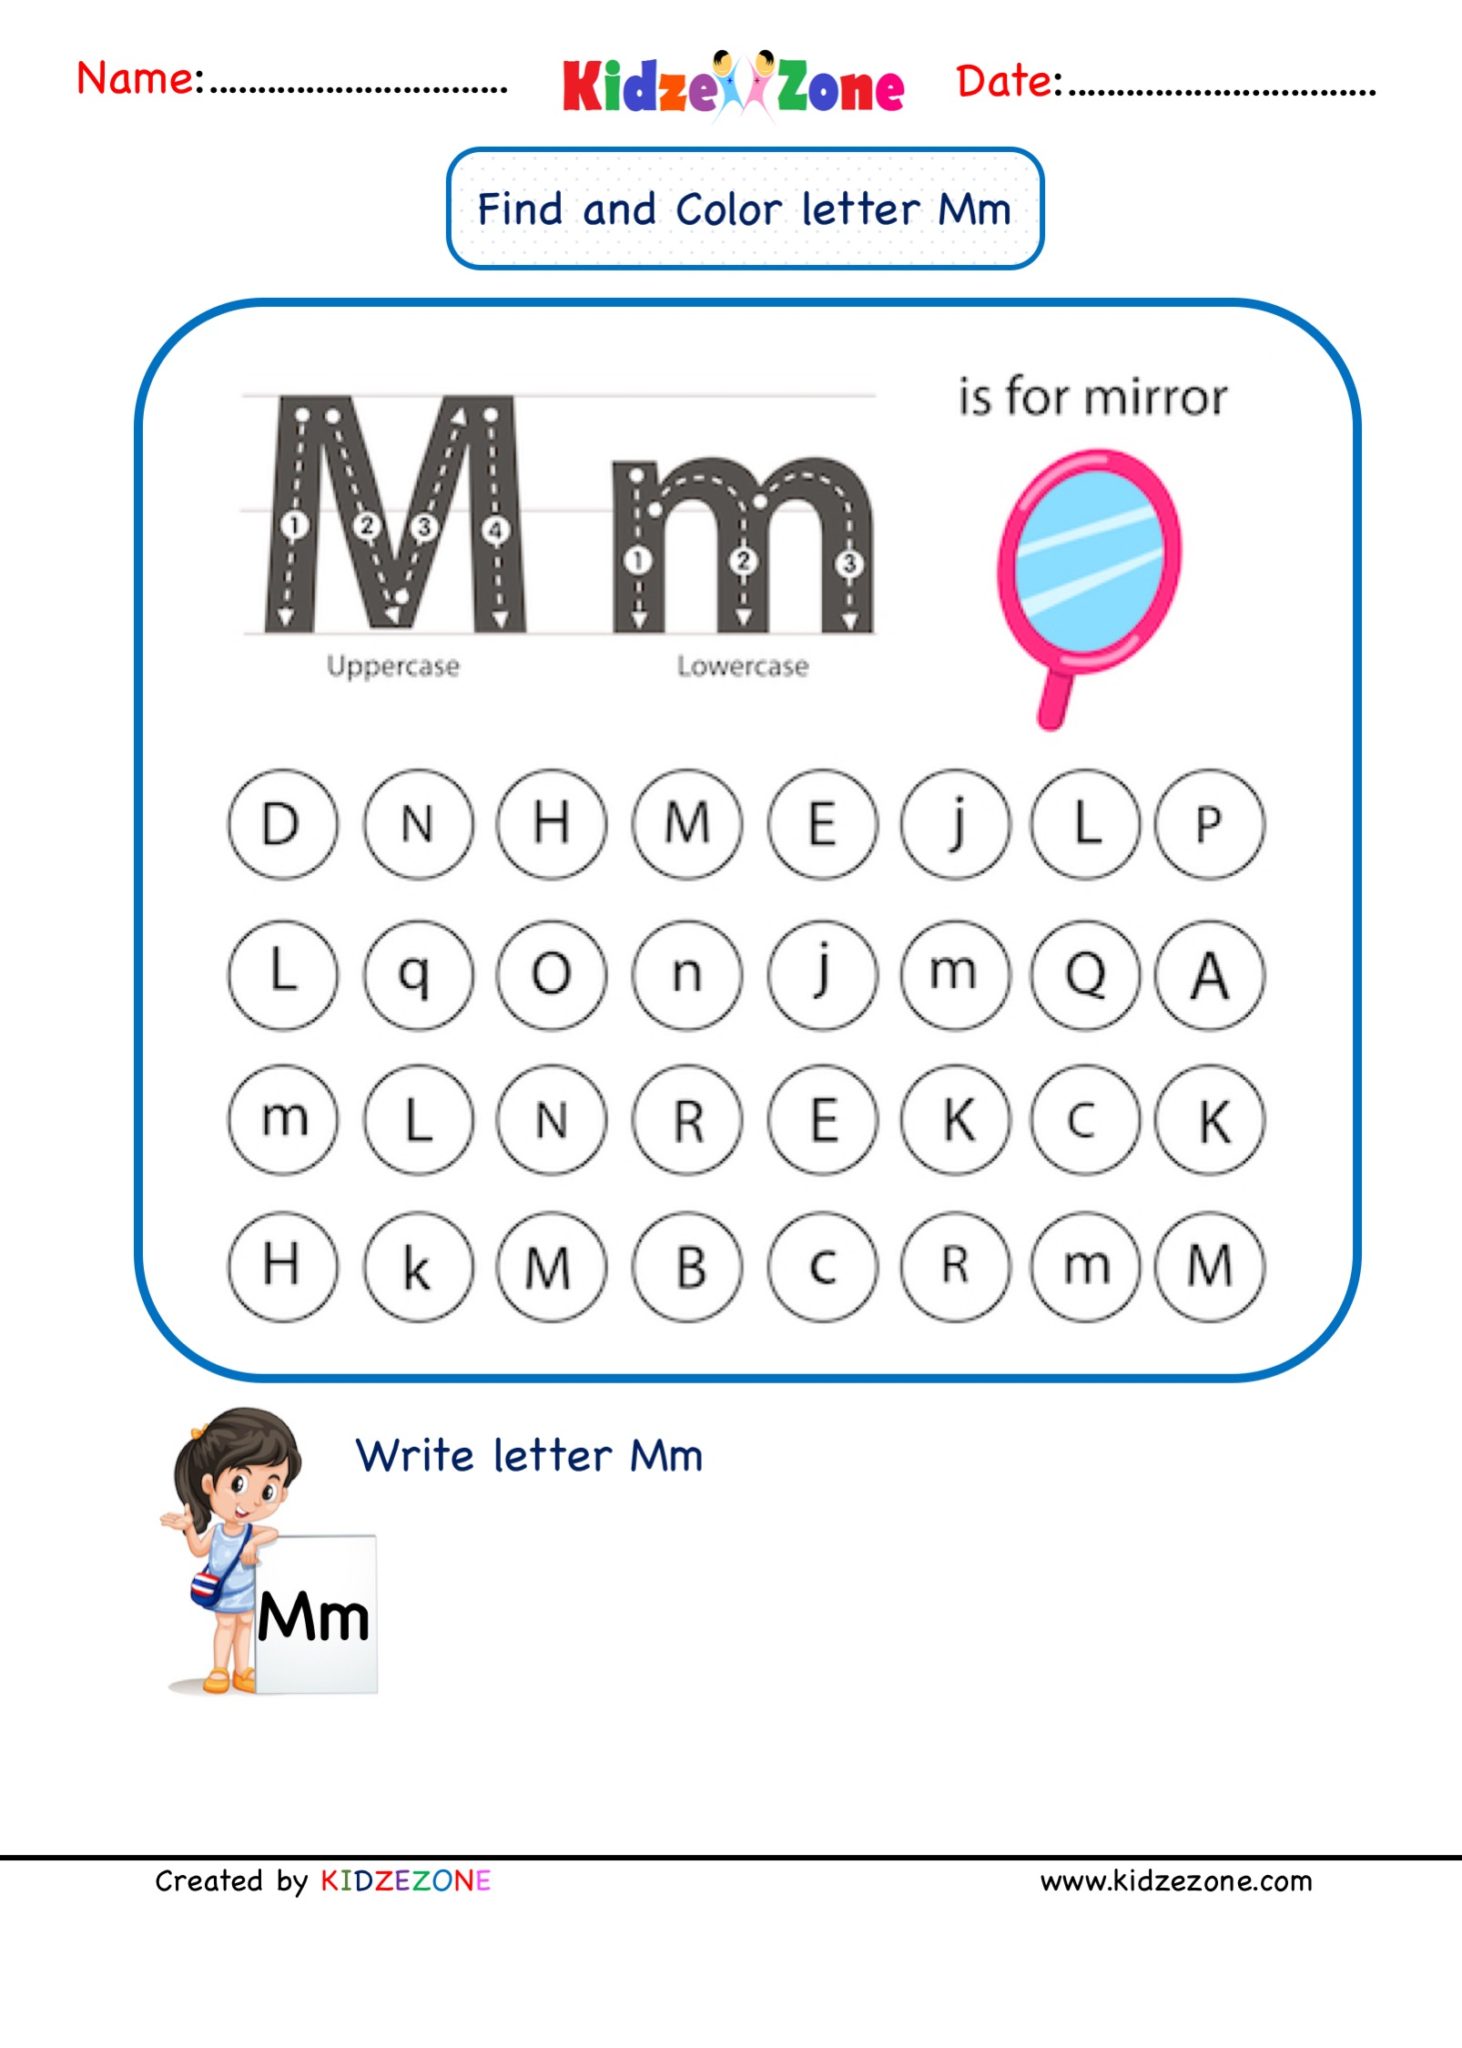 kindergarten-letter-m-worksheets-find-and-color-kidzezone